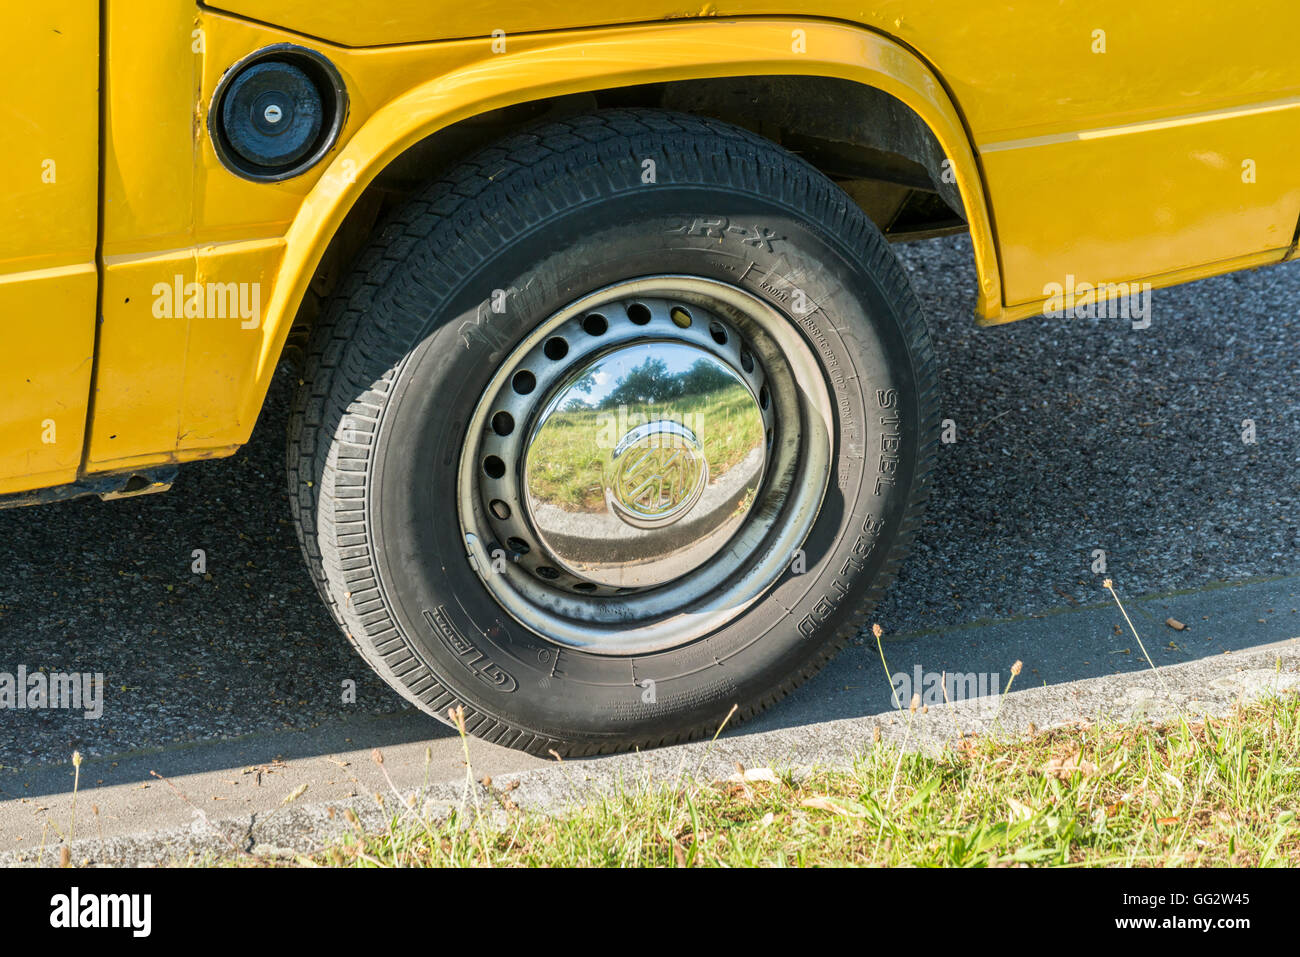 Regensburg, Bavière, Allemagne - le 18 juillet 2016 : La photo montre un gros plan d'un felloe chrome sur un bus VW jaune avec le signe VW Banque D'Images